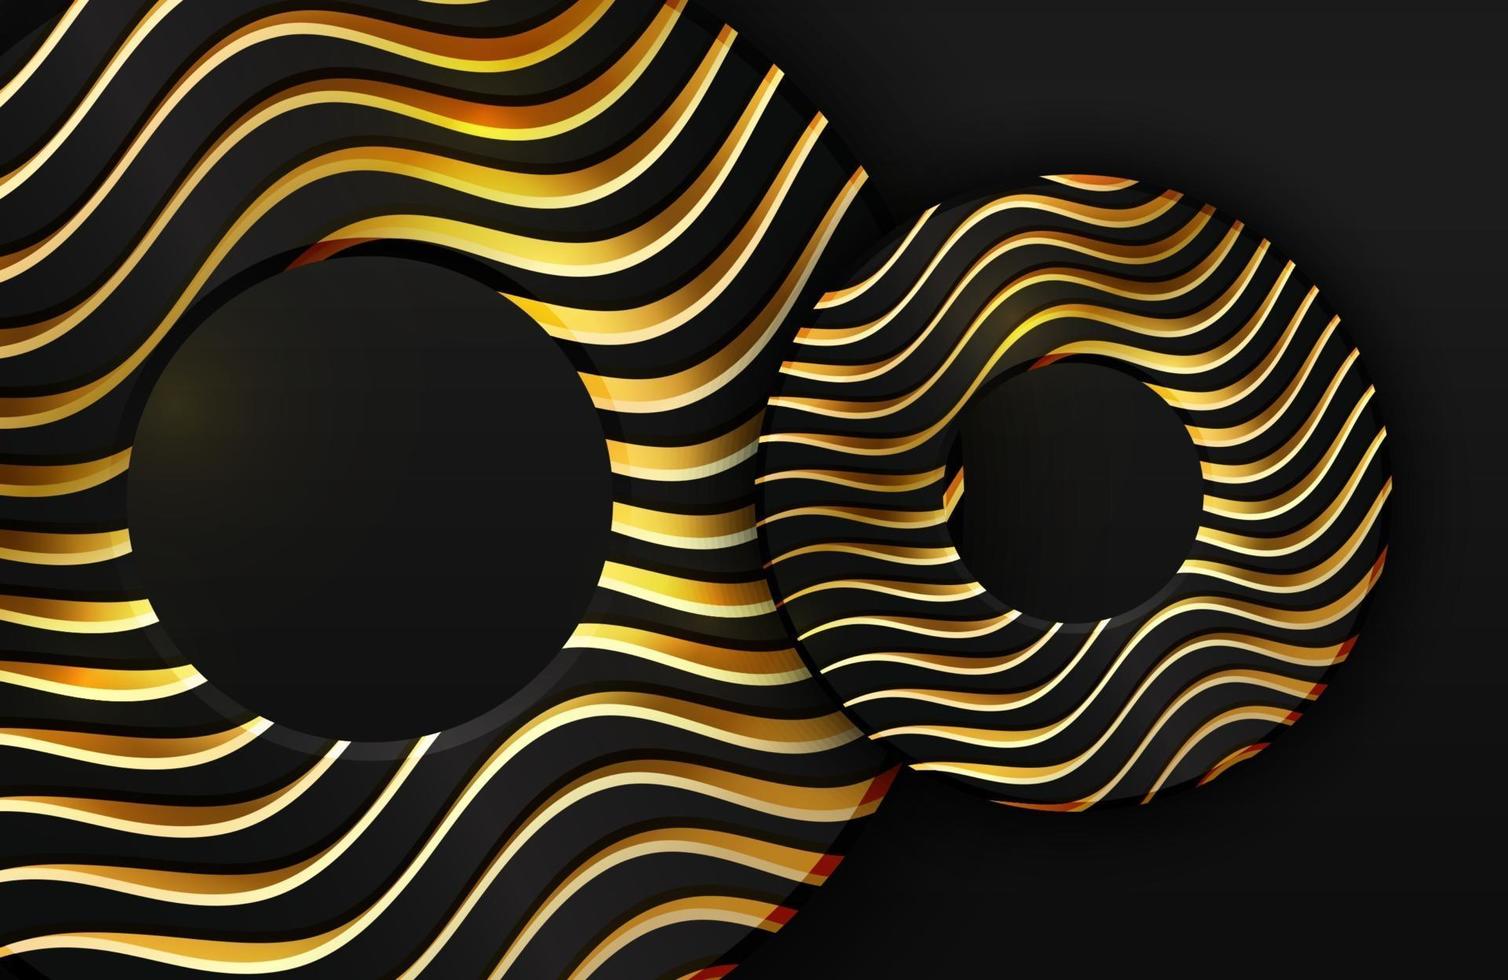 Fond réaliste 3d de luxe avec illustration vectorielle de cercle or forme de formes de cercle noir texturé avec des lignes ondulées dorées vecteur